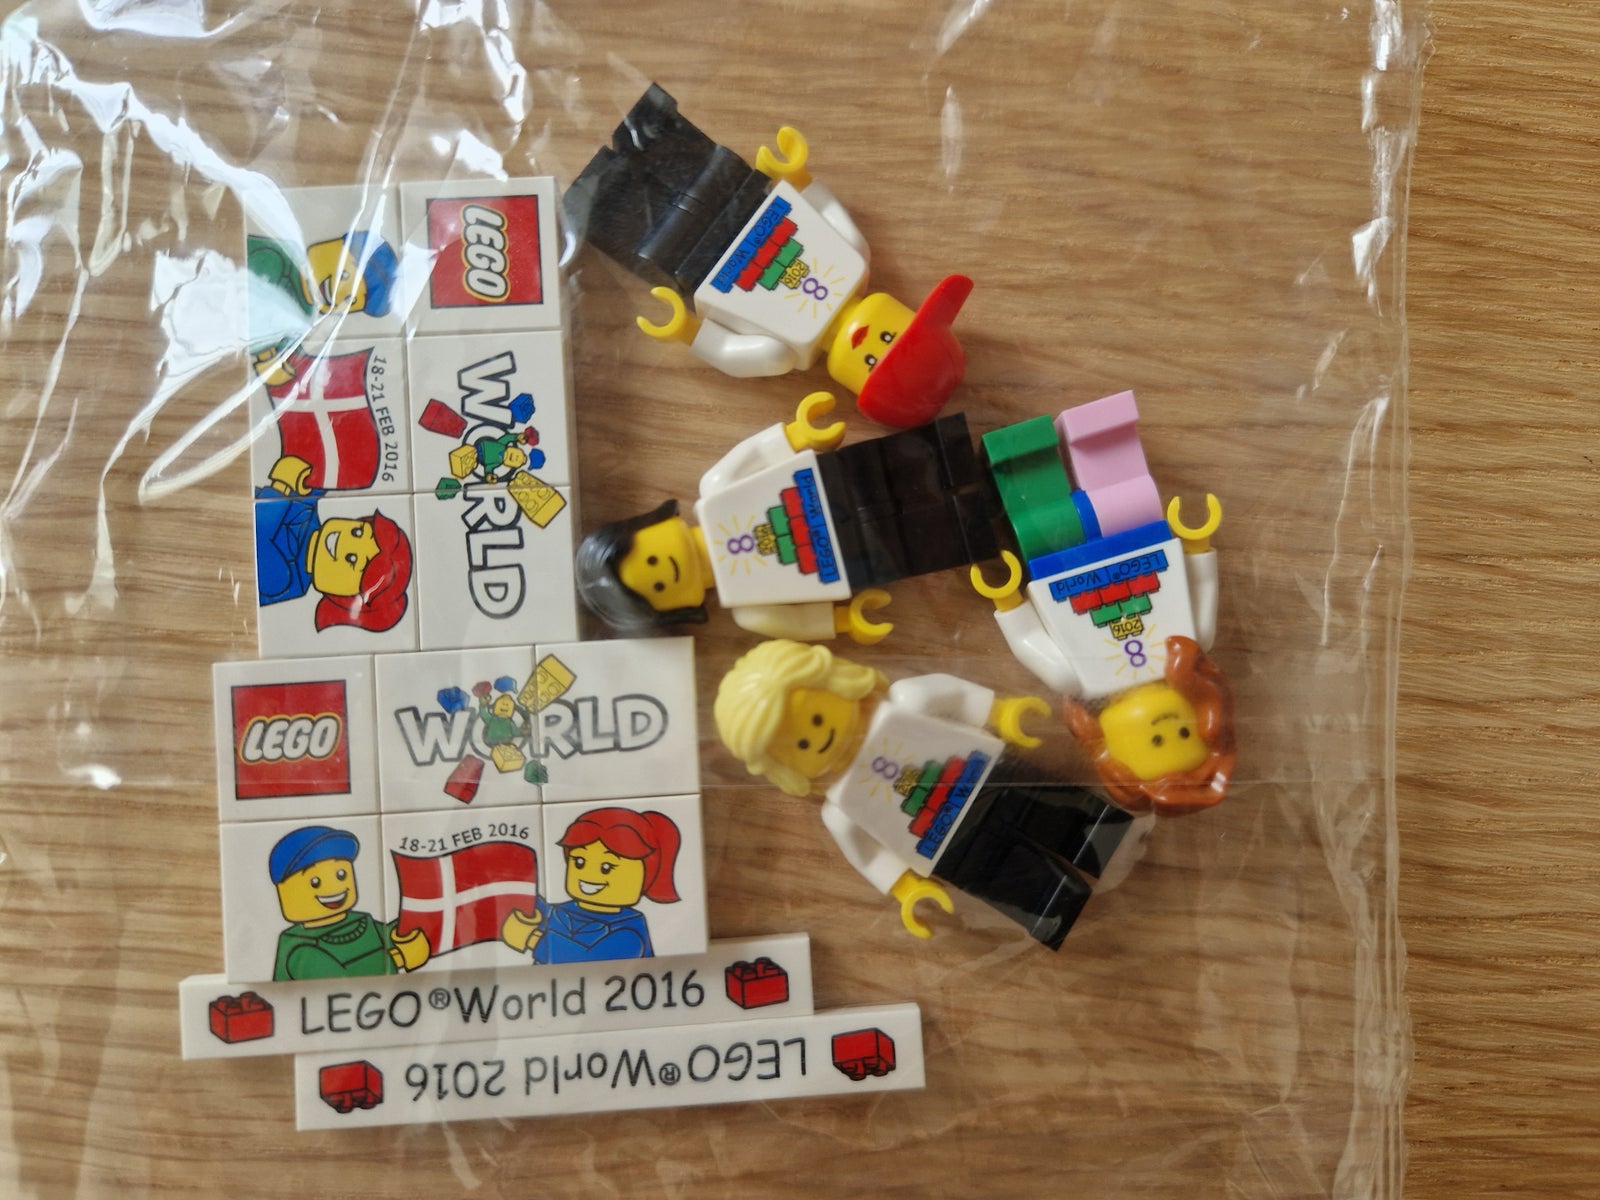 Væk Nogen maling Lego andet, Lego world 2016 – dba.dk – Køb og Salg af Nyt og Brugt